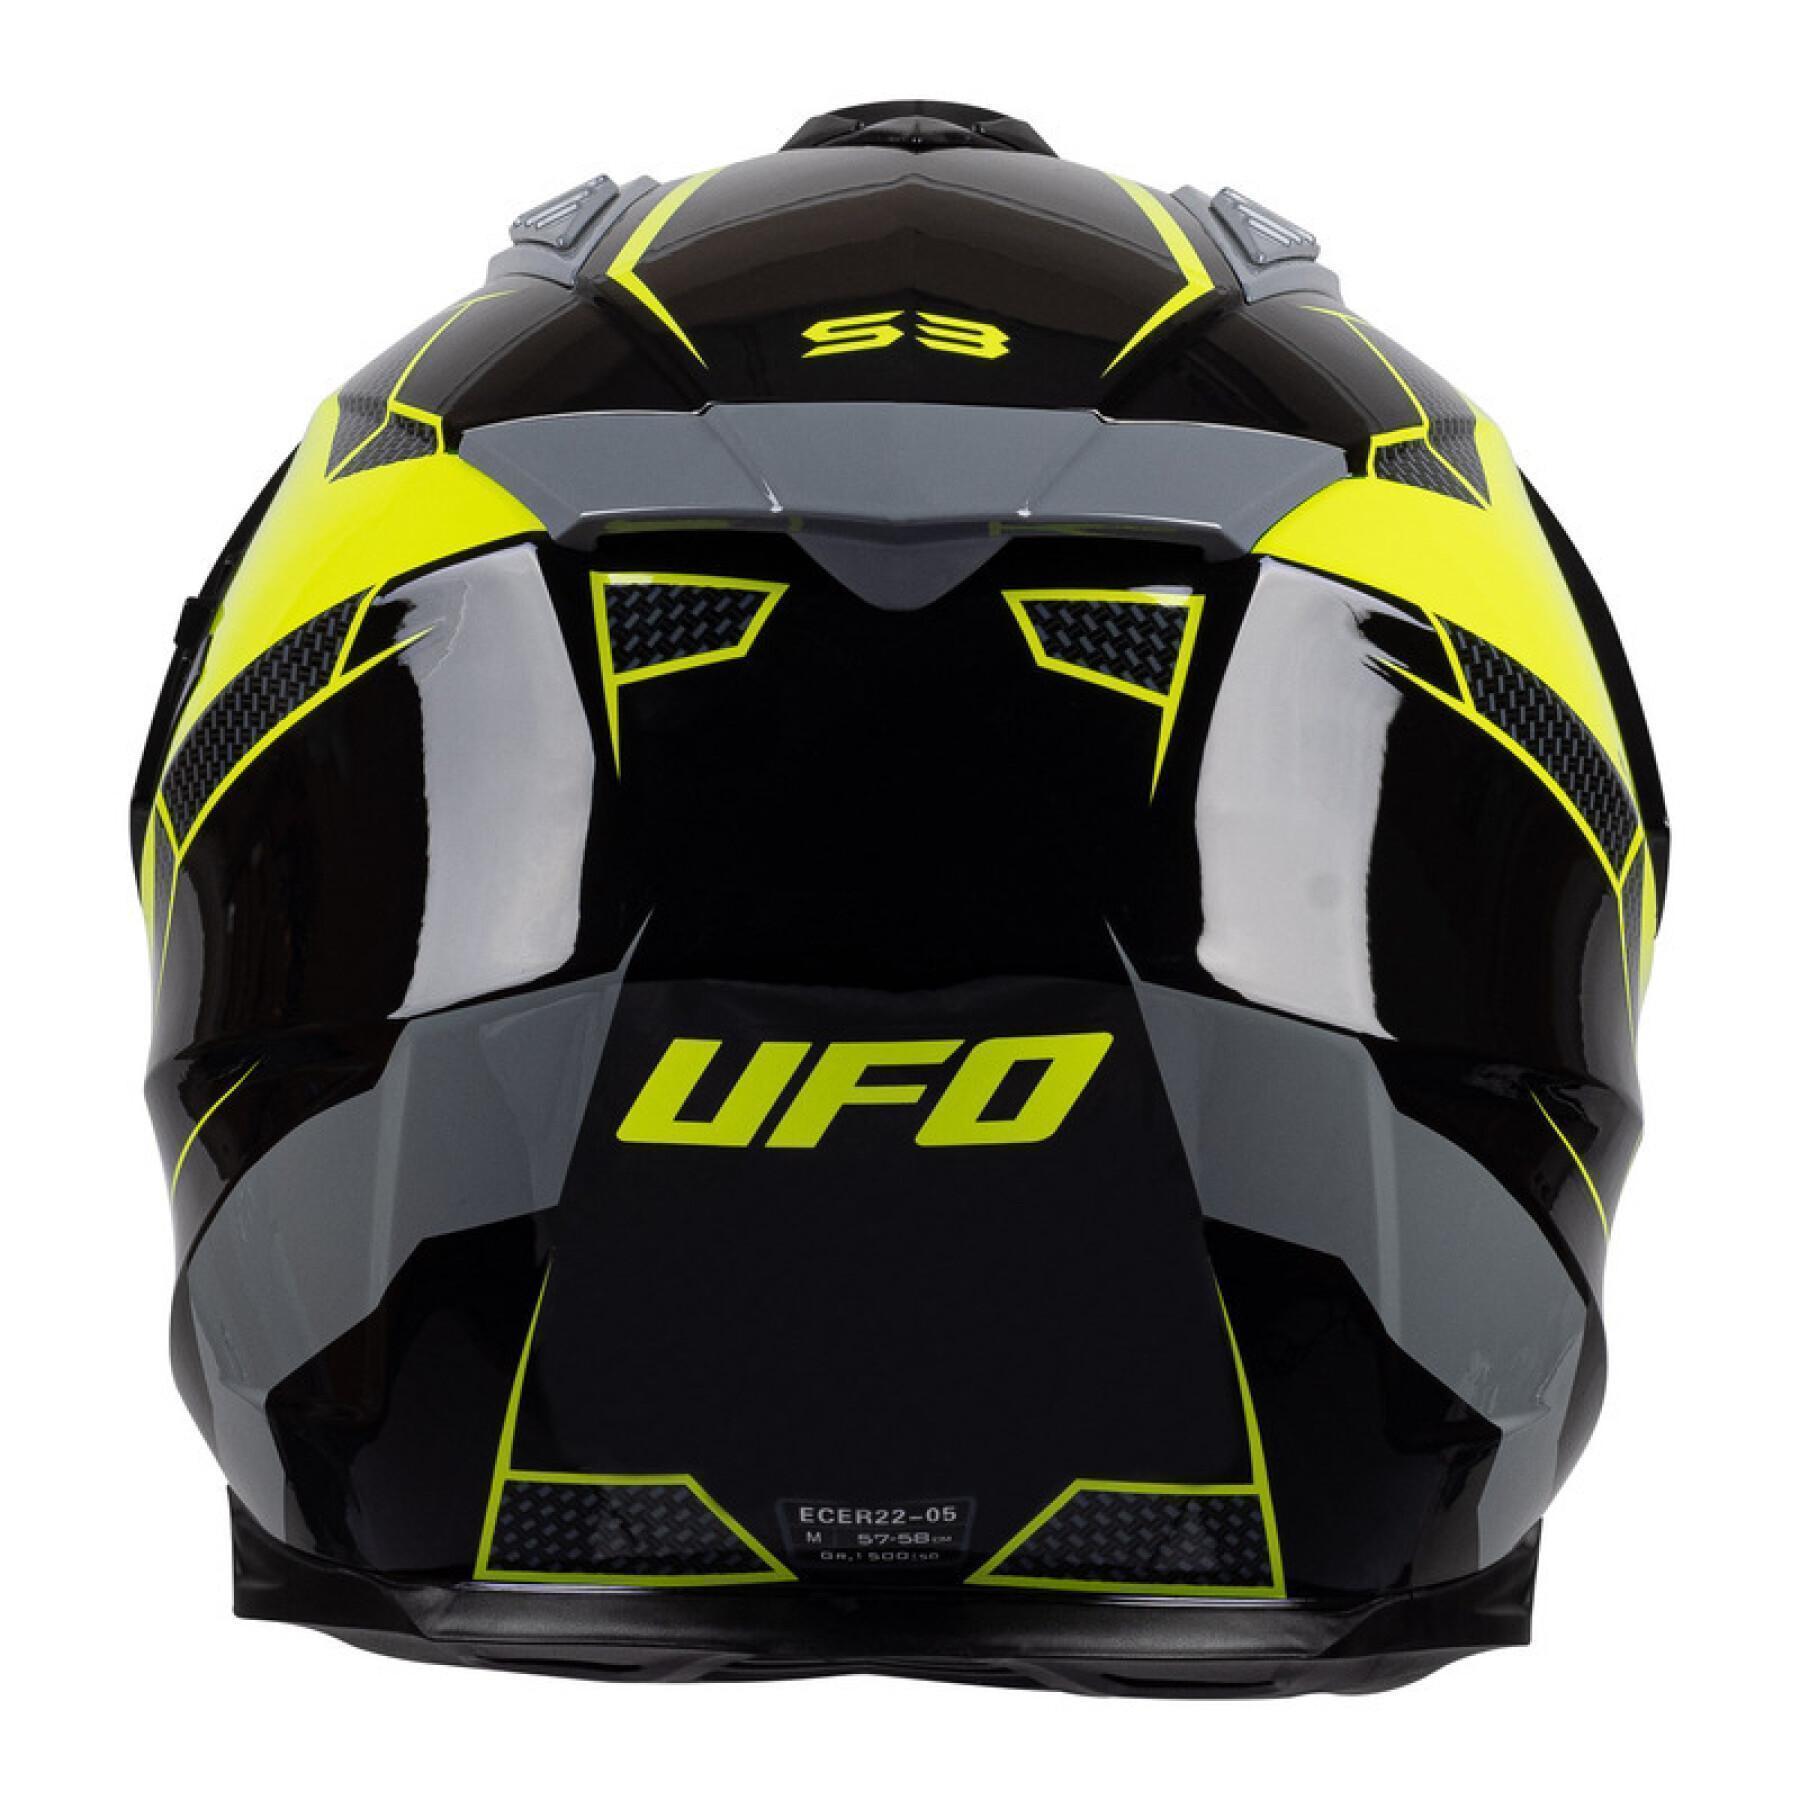 Capacete de motocicleta UFO Aries